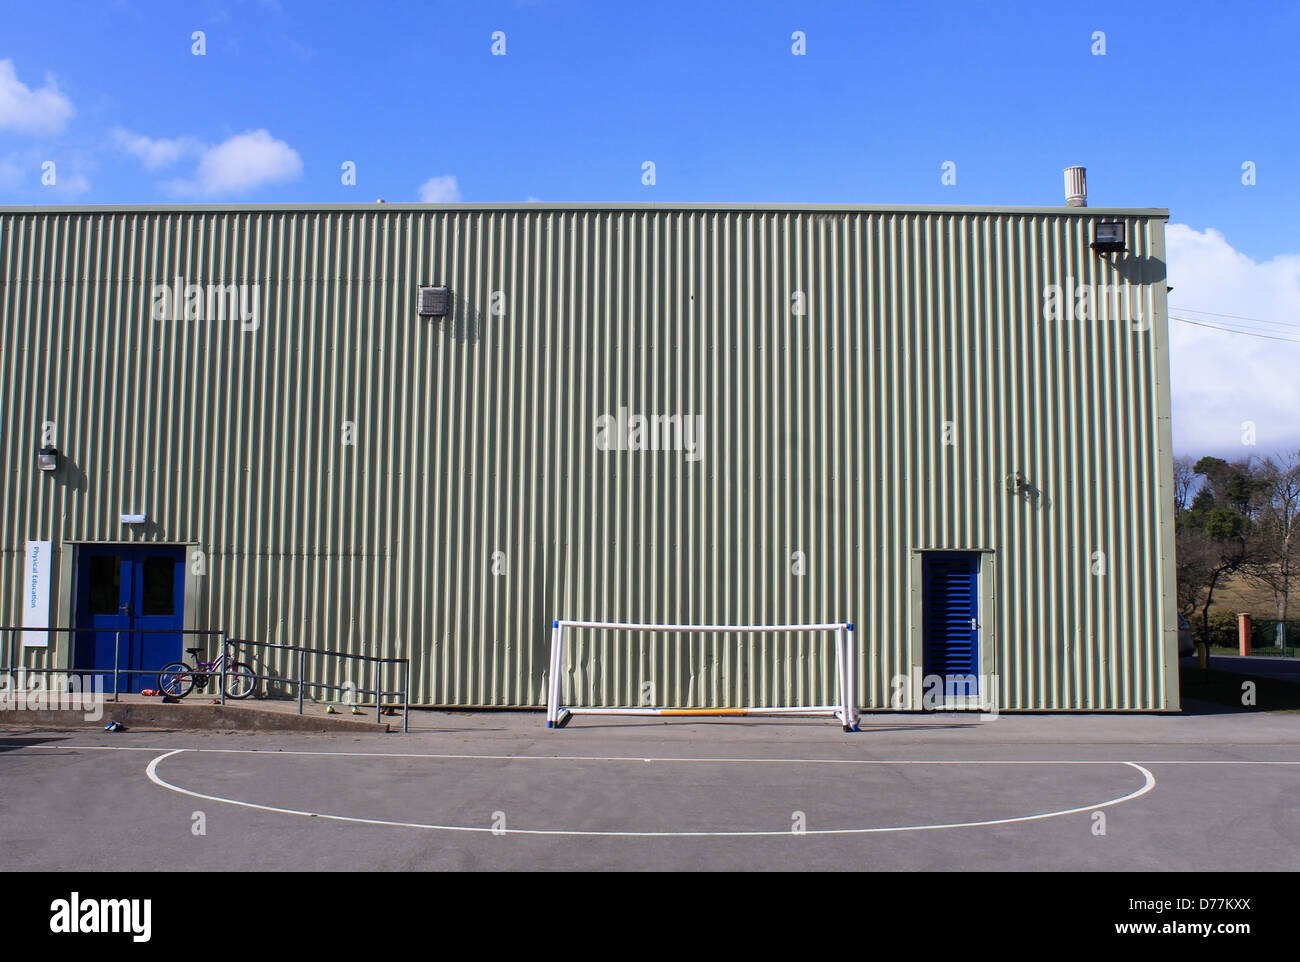 Exterieur der modernen Schule Sporthalle mit Ziel netto im Vordergrund. Stockfoto